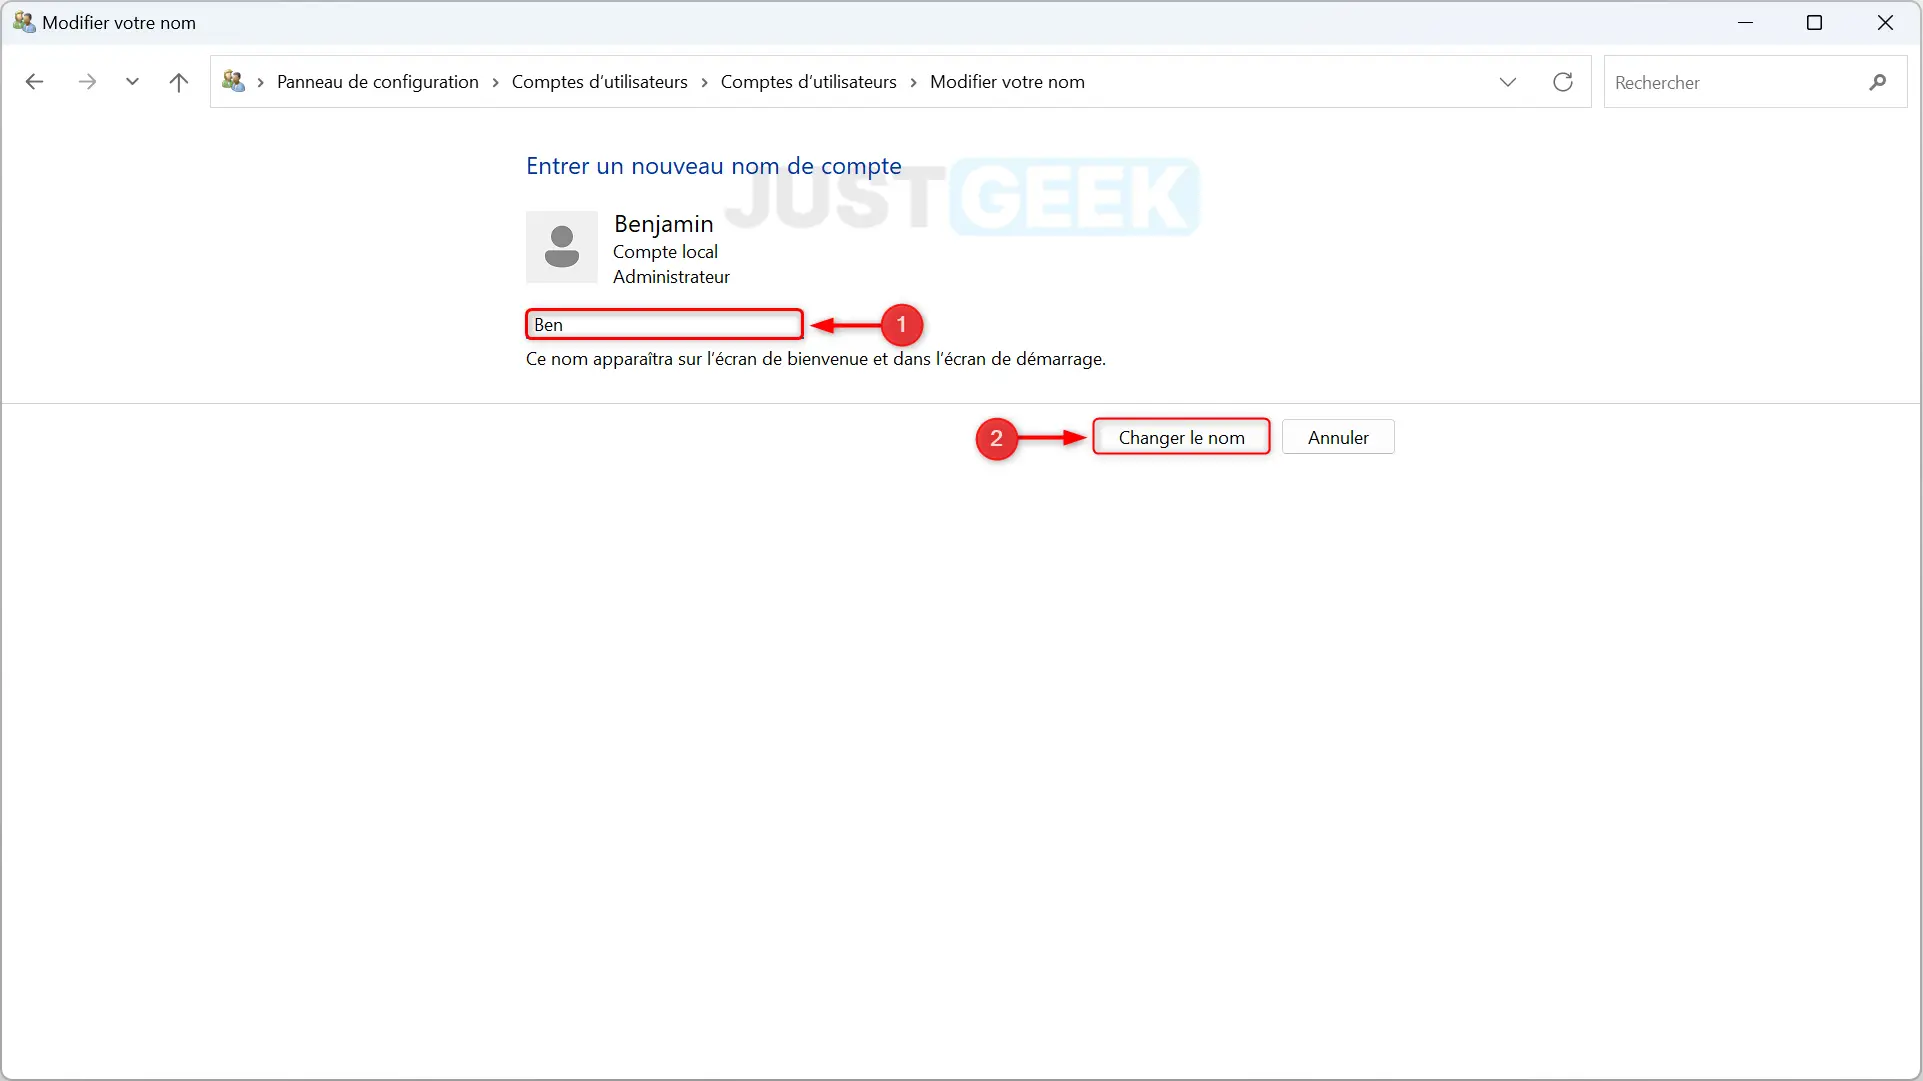 Capture d'écran montrant le champ où saisir le nouveau nom de compte utilisateur et le bouton 'Changer le nom' dans Windows 11.